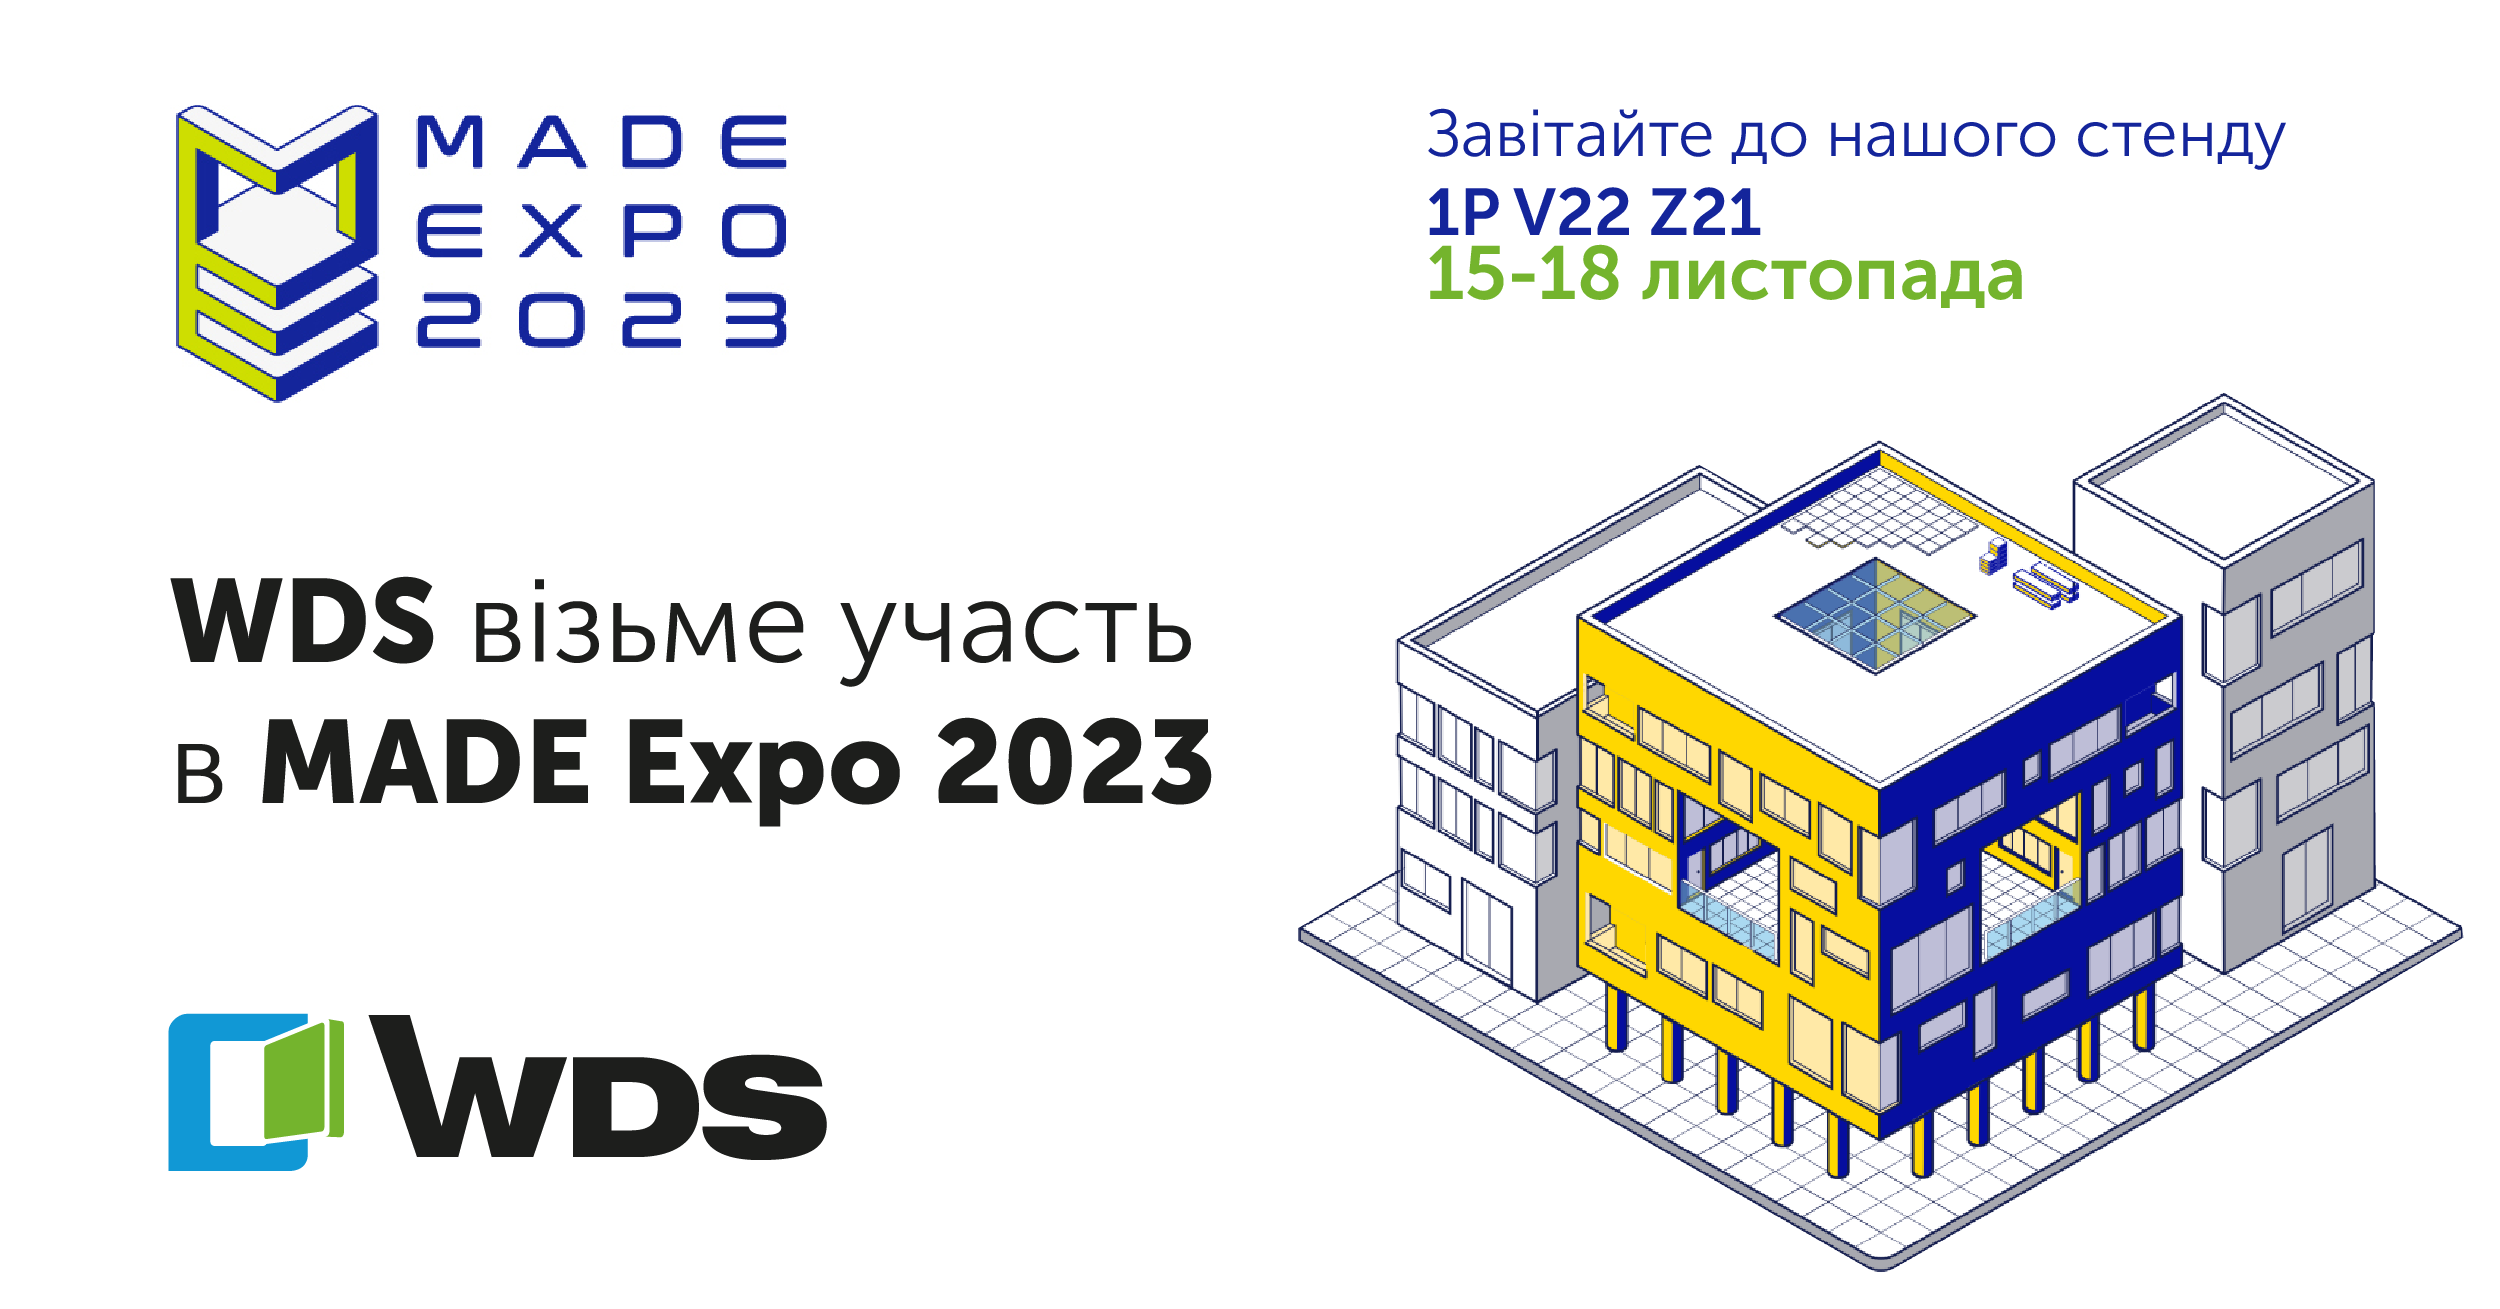 WDS візьме участь у виставці MADE expo 2023